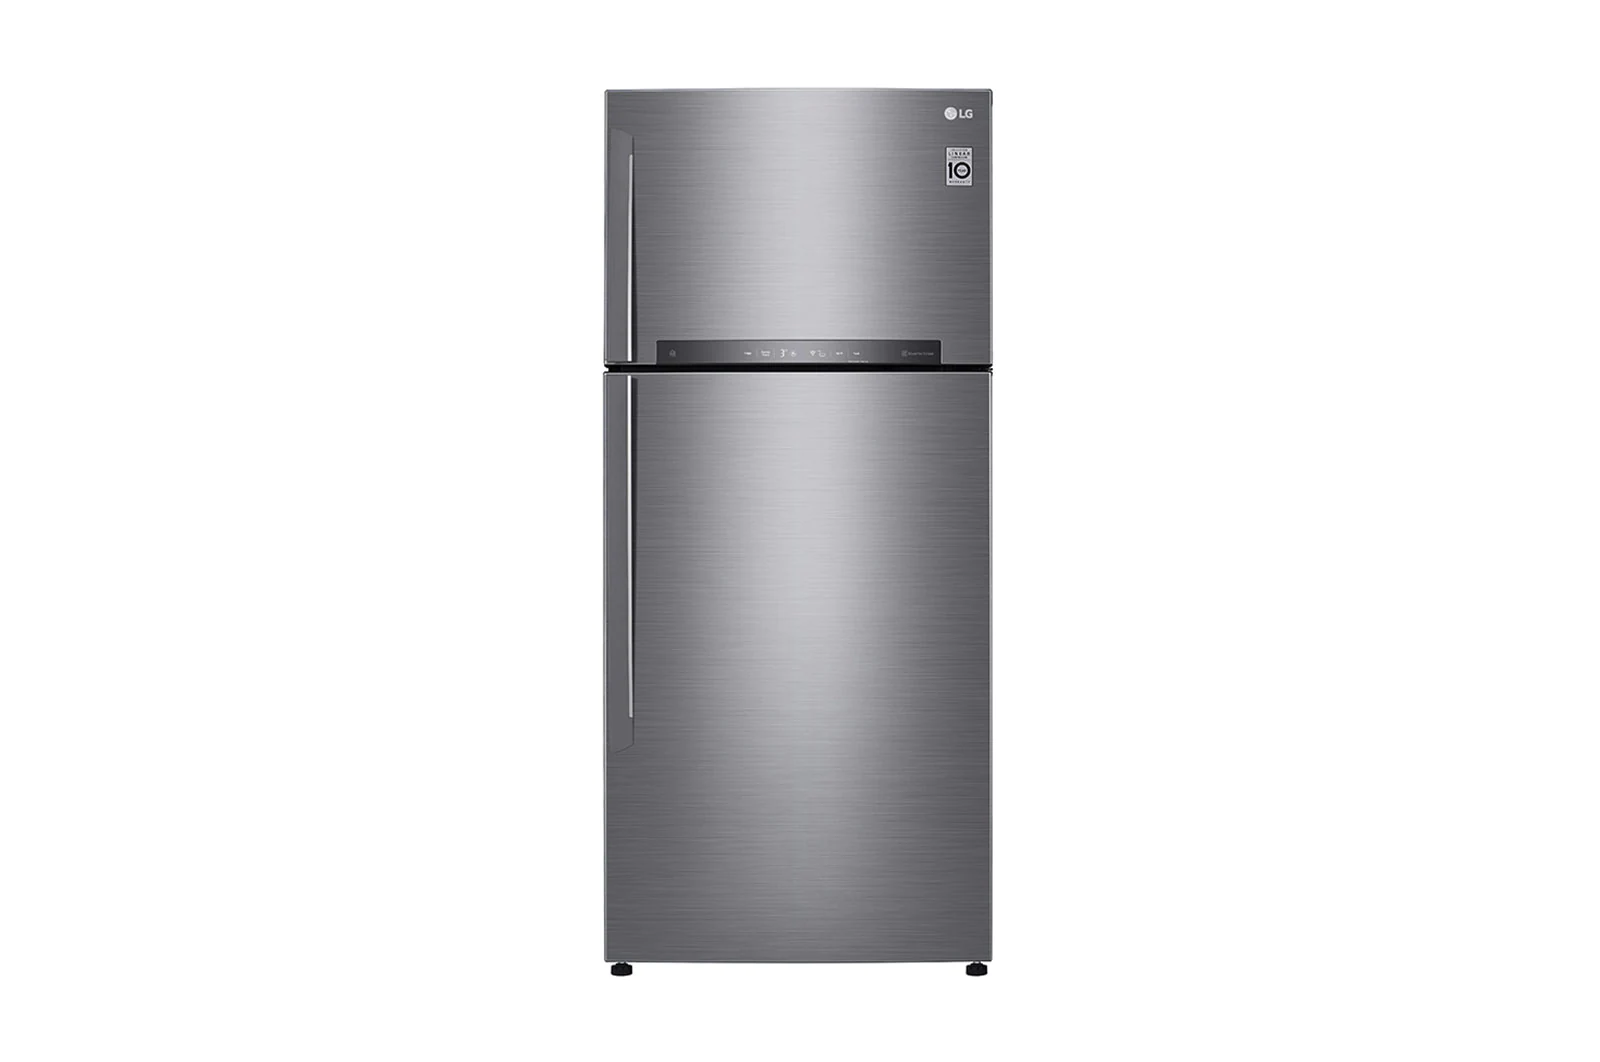 LG 842 Liter Top Mount Refrigerator Smart Inverter Compressor Door Cooling Color Silver Model- GRH842HLHL.